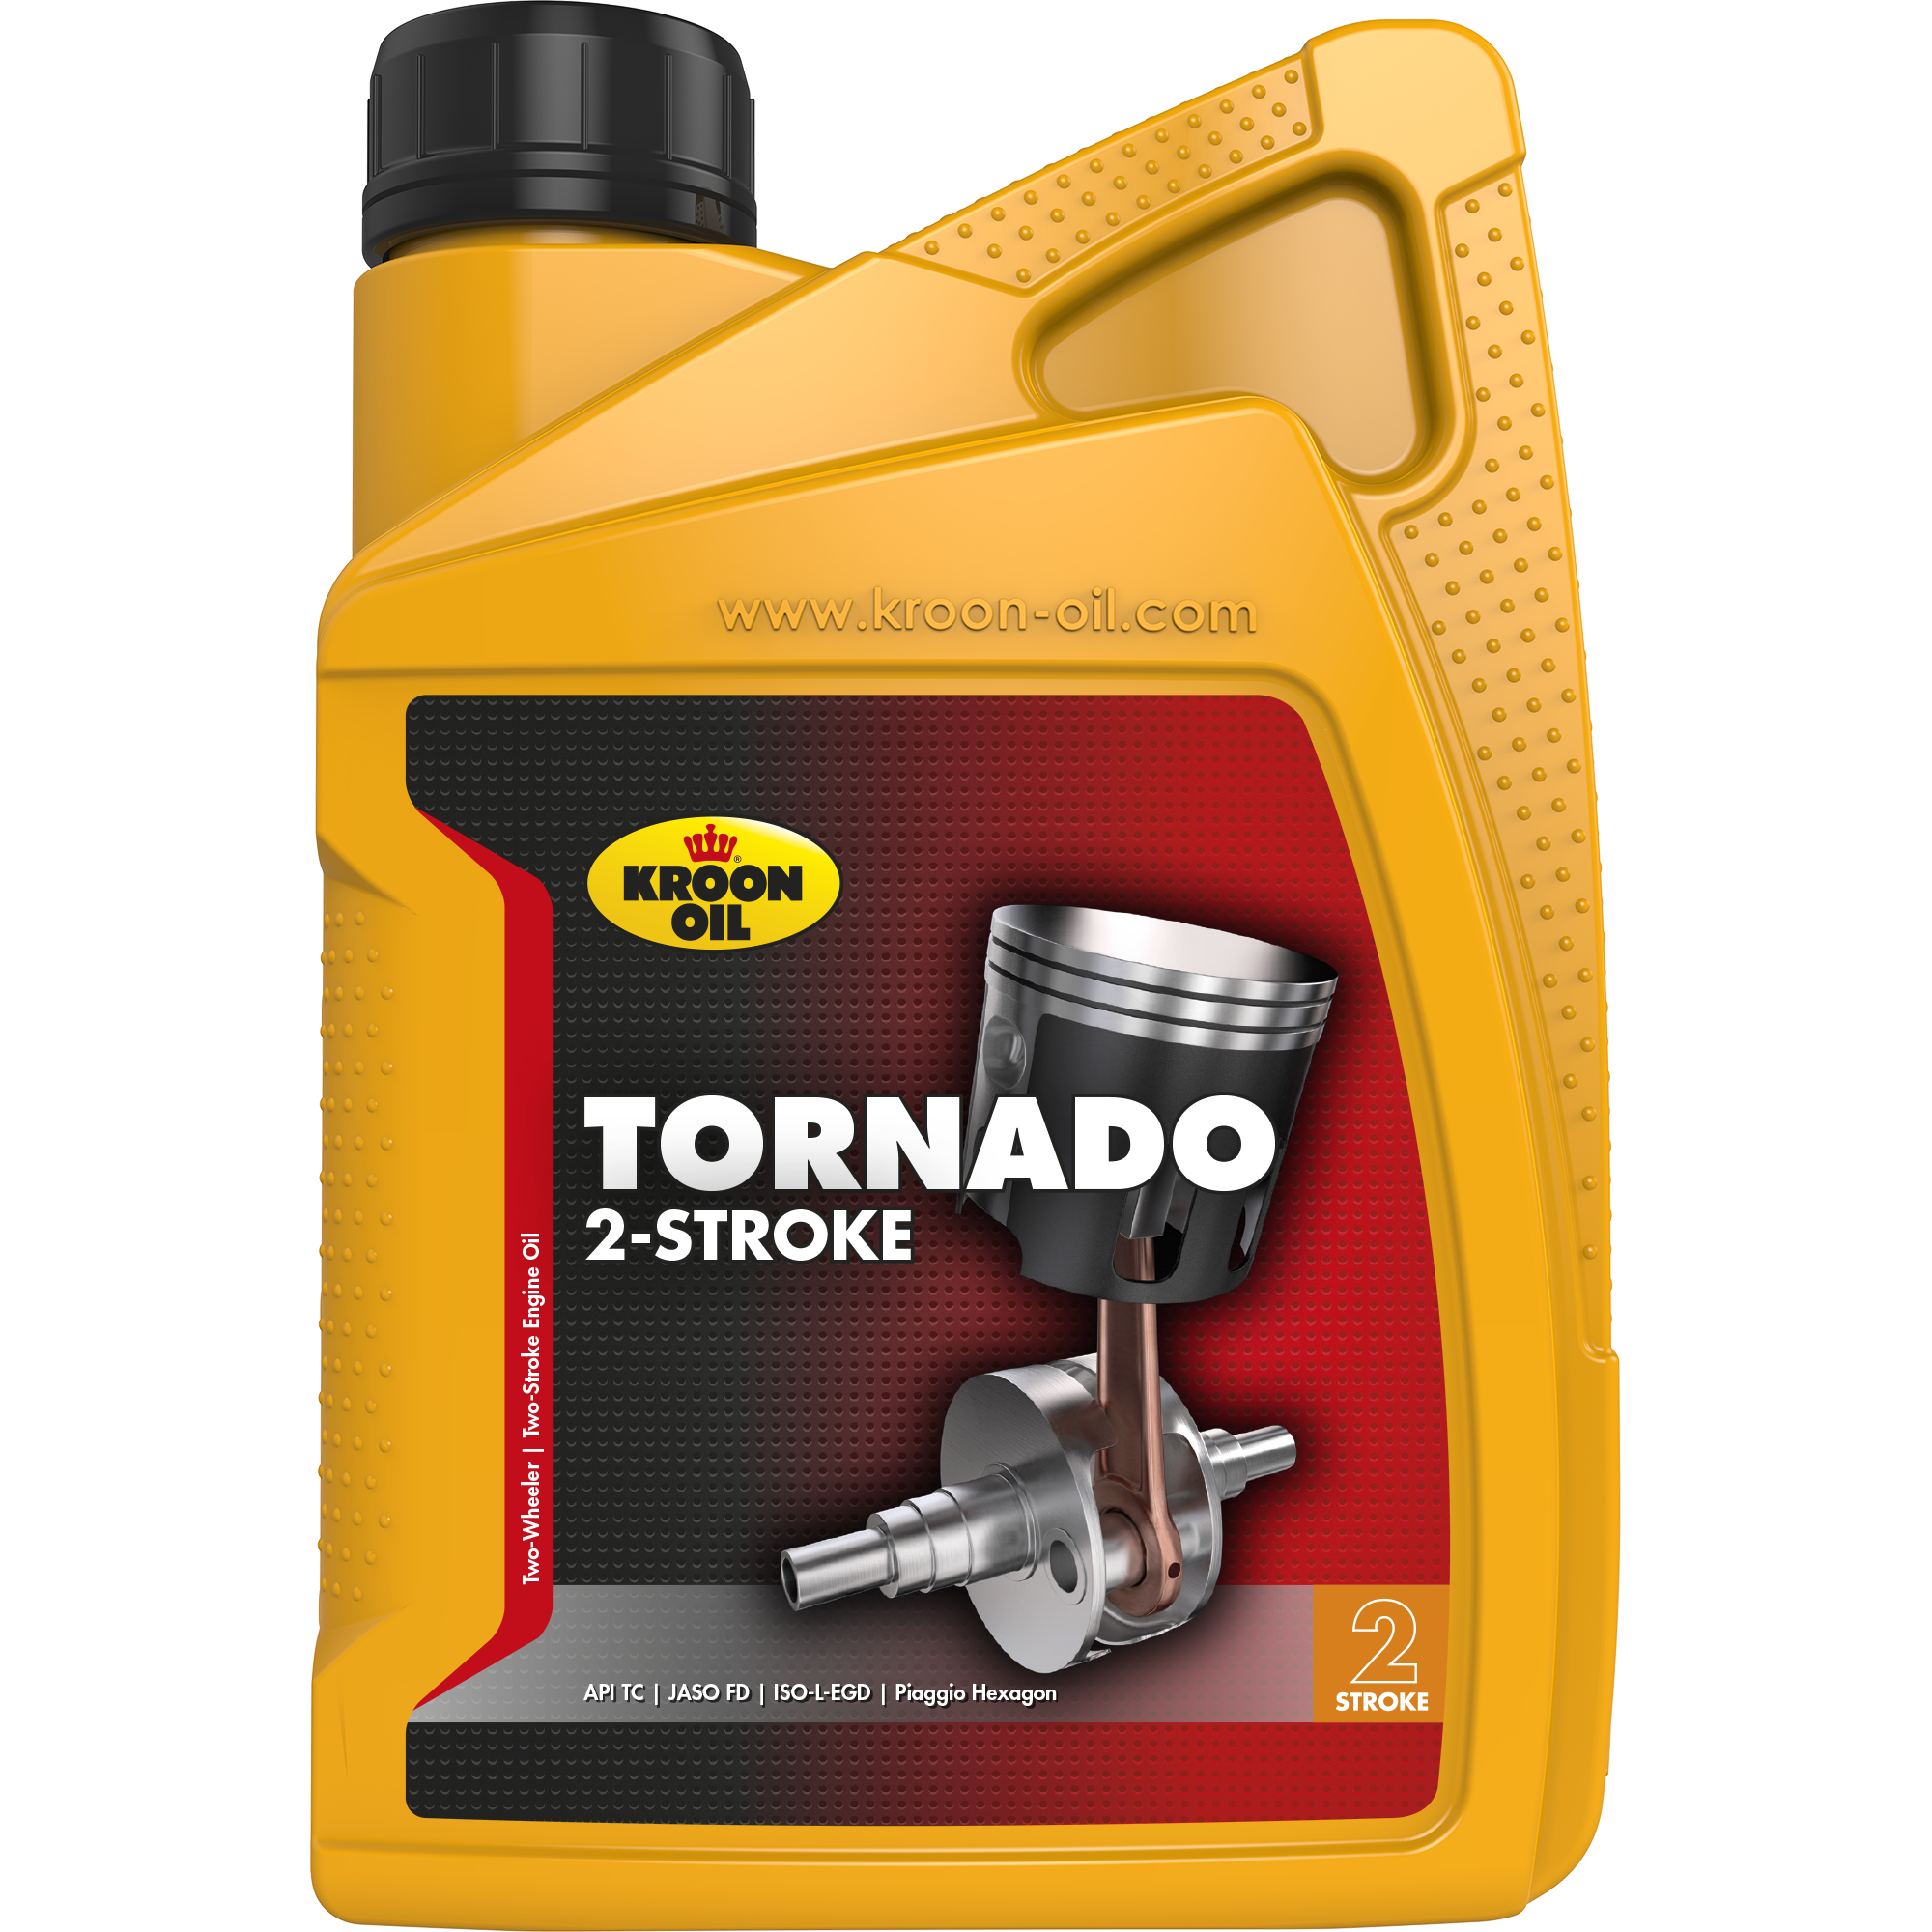 02225-1 Tornado is een 2-takt (benzine) motorolie op 100% synthetische basis.